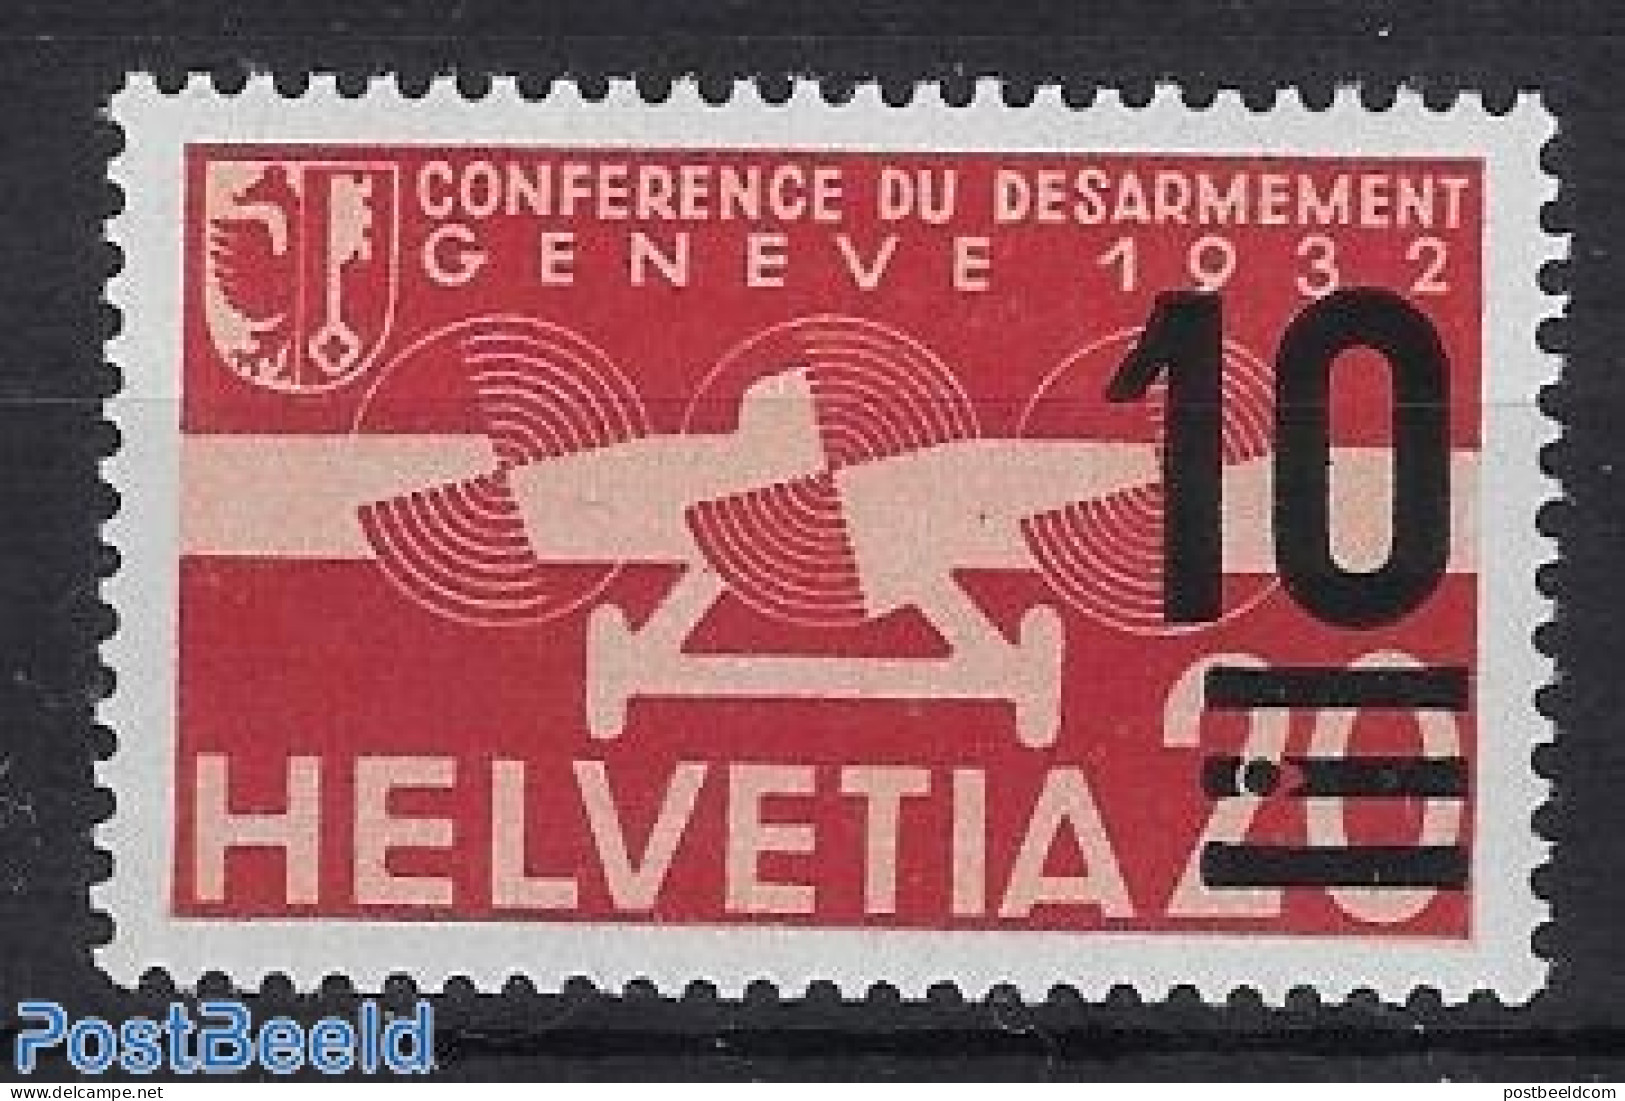 Switzerland 1936 Airmail Overprint, With Point In Centre Line Cert., Mint NH - Ungebraucht